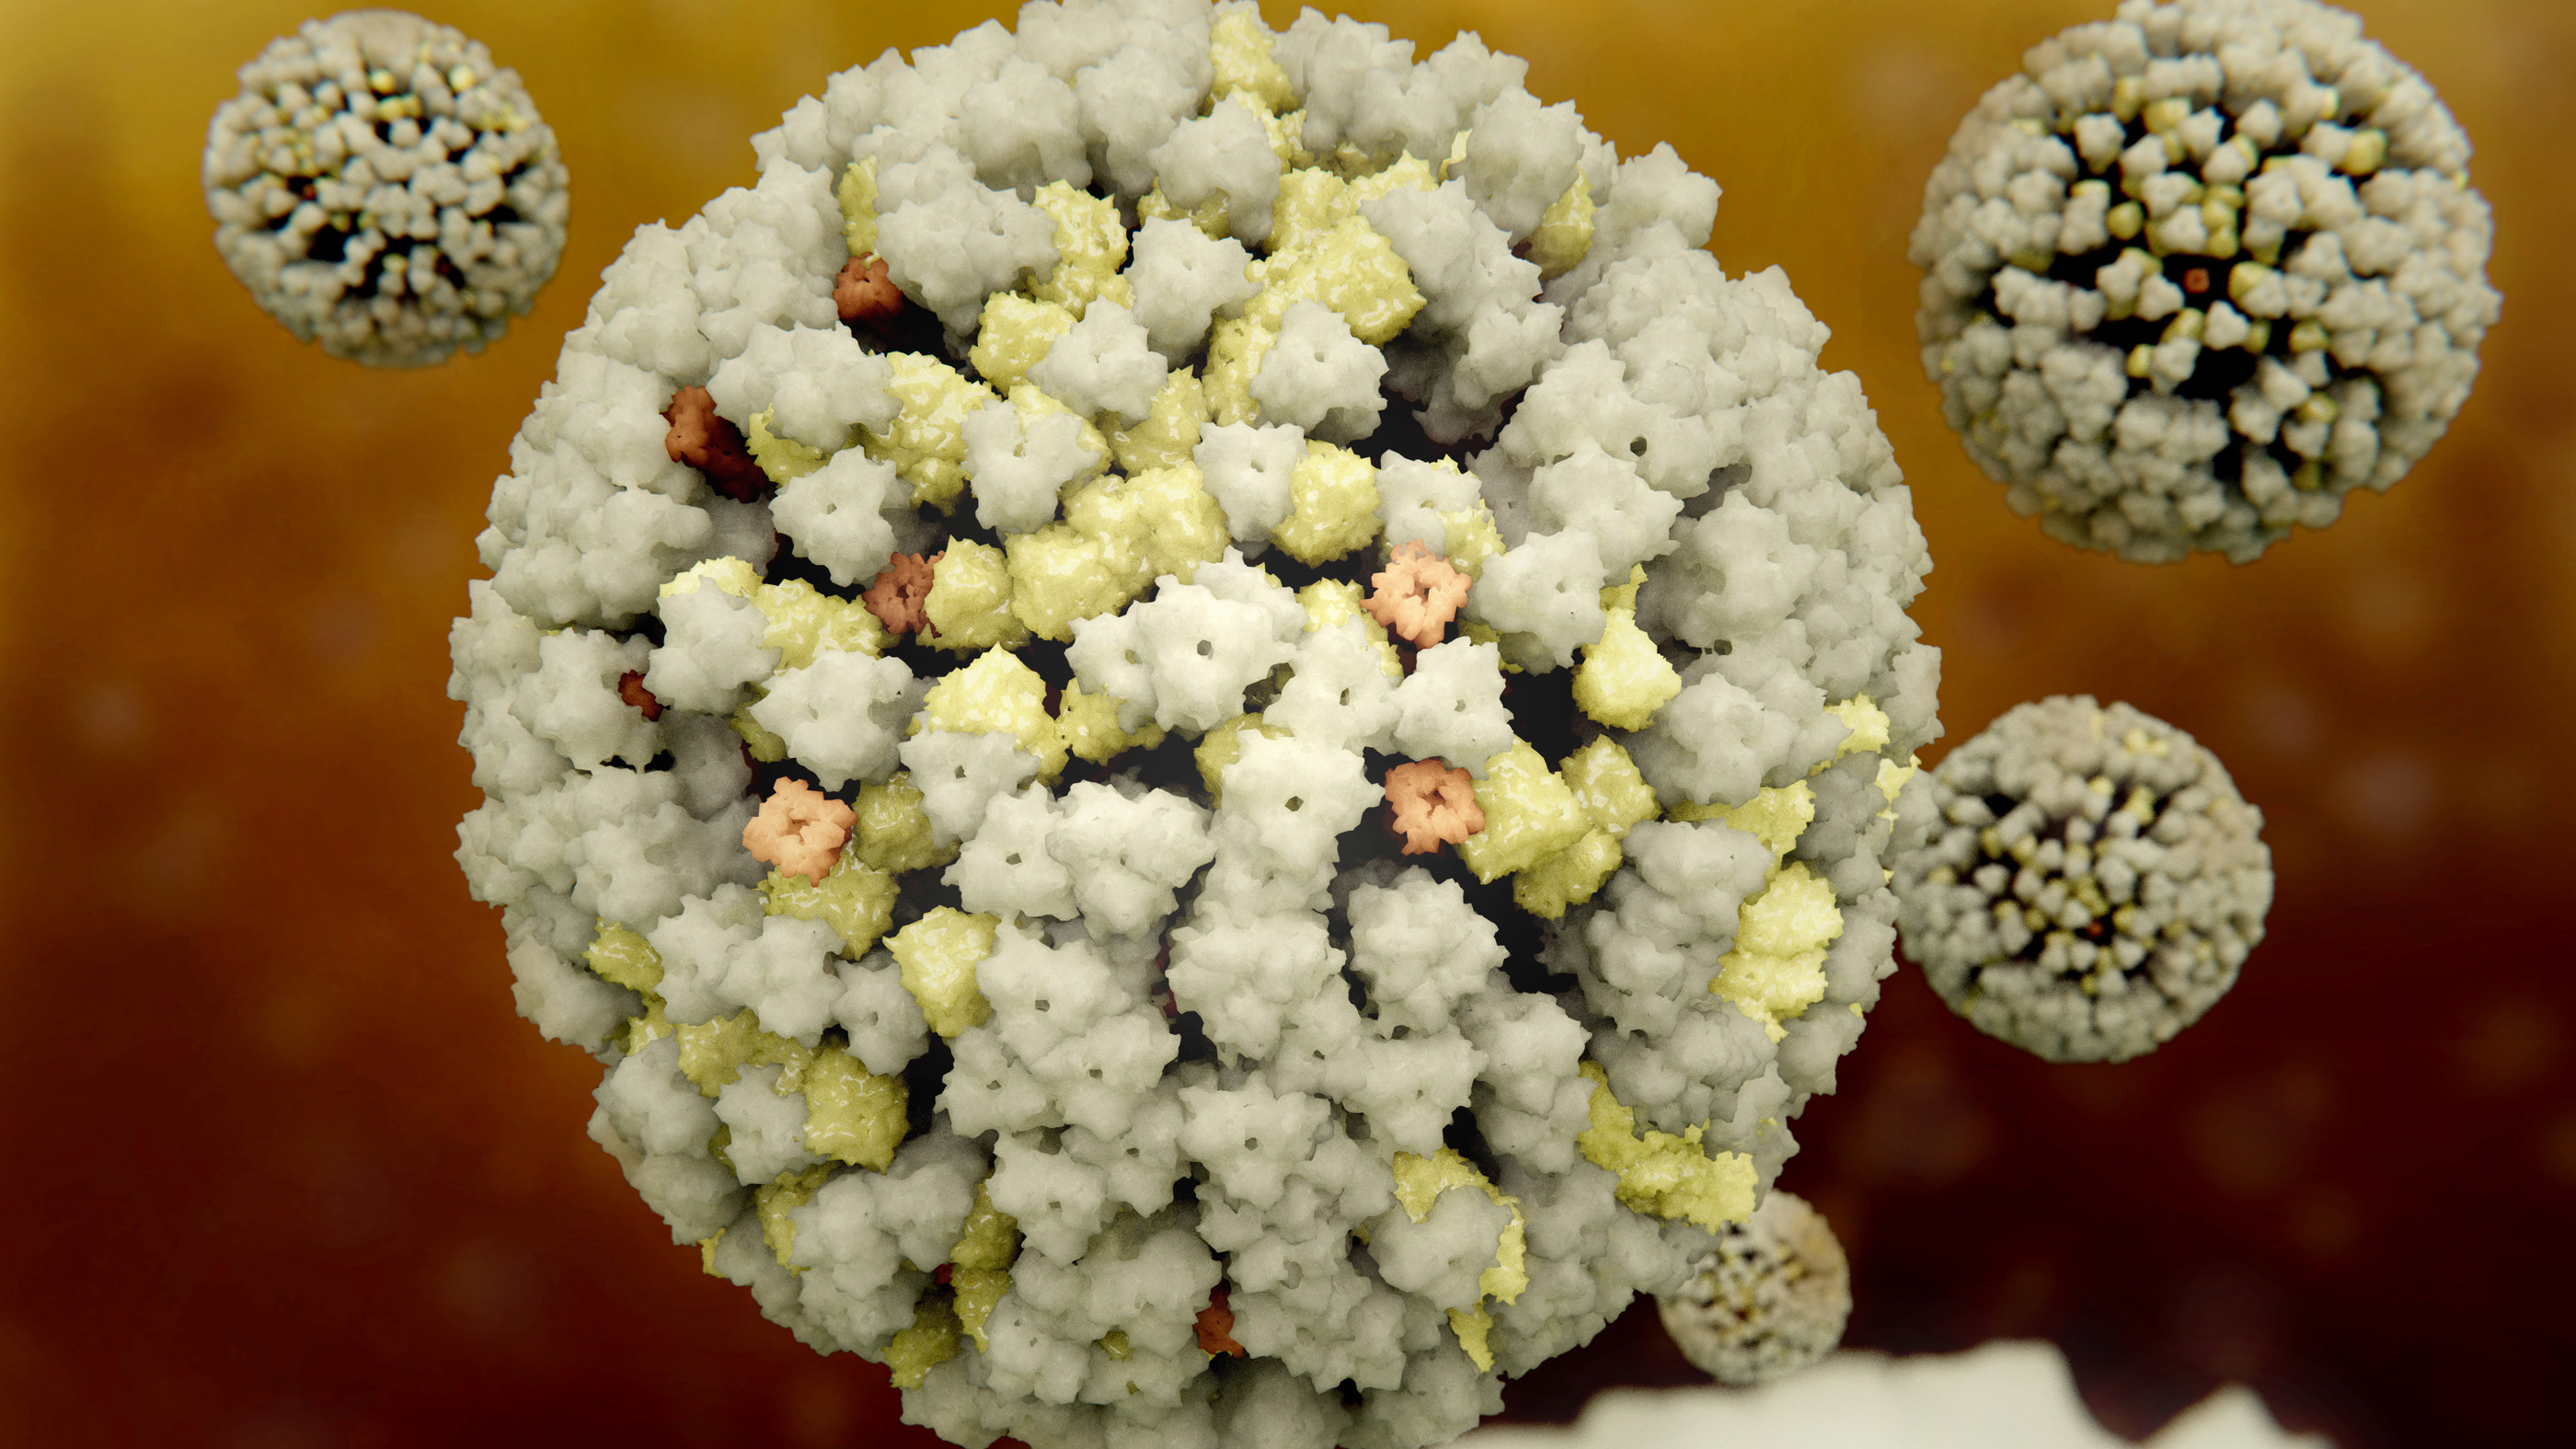 3D-rendering of an influenza virus.